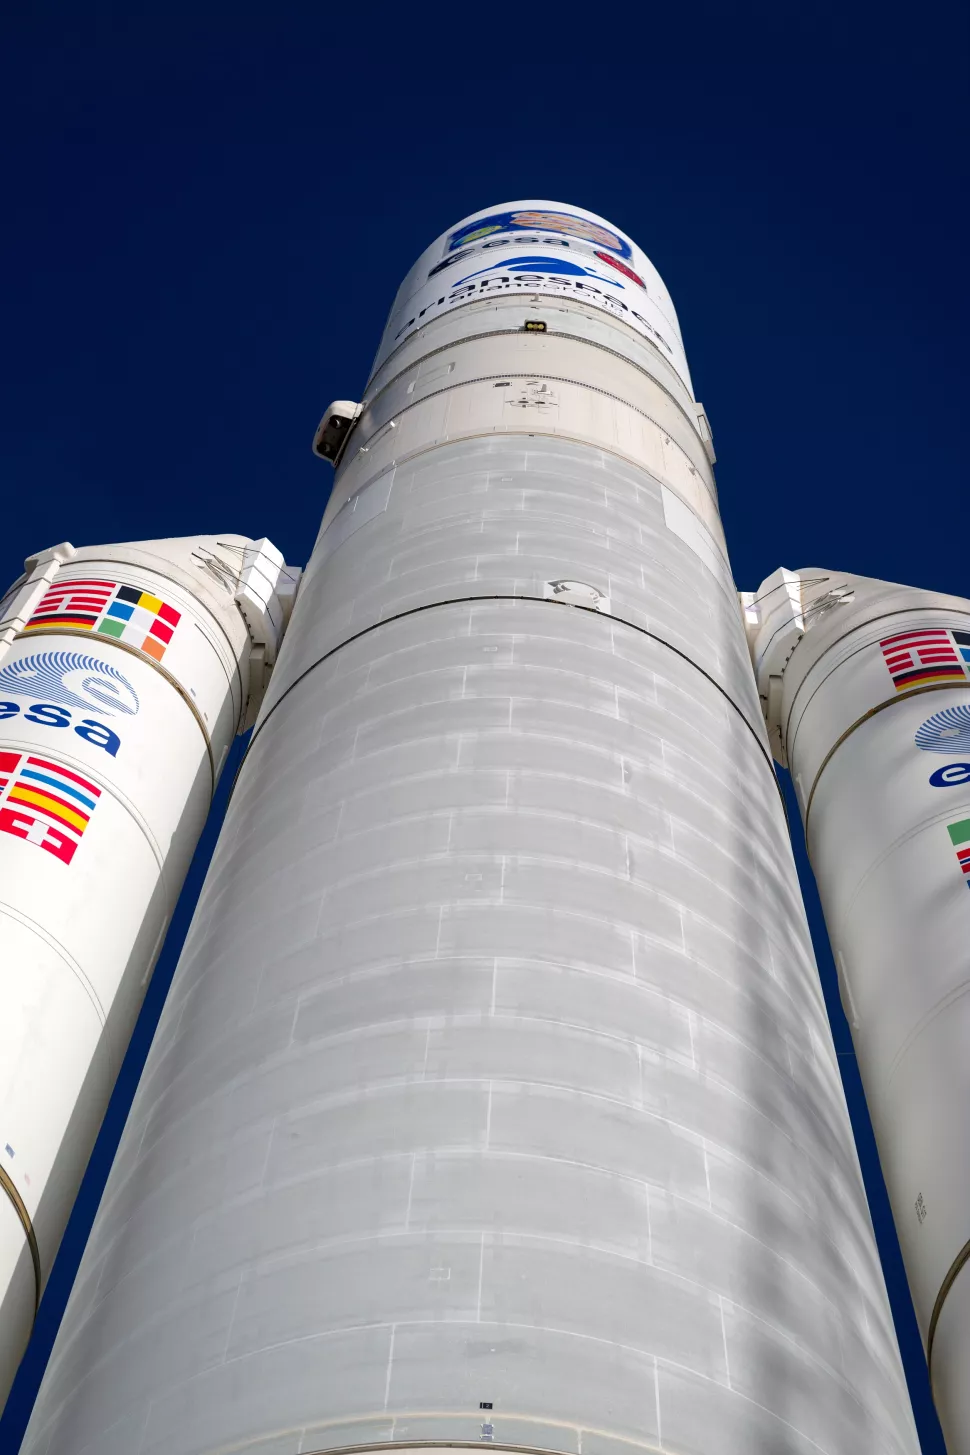 ماموریت پرچمدار اروپا روی سکوی پرتاب